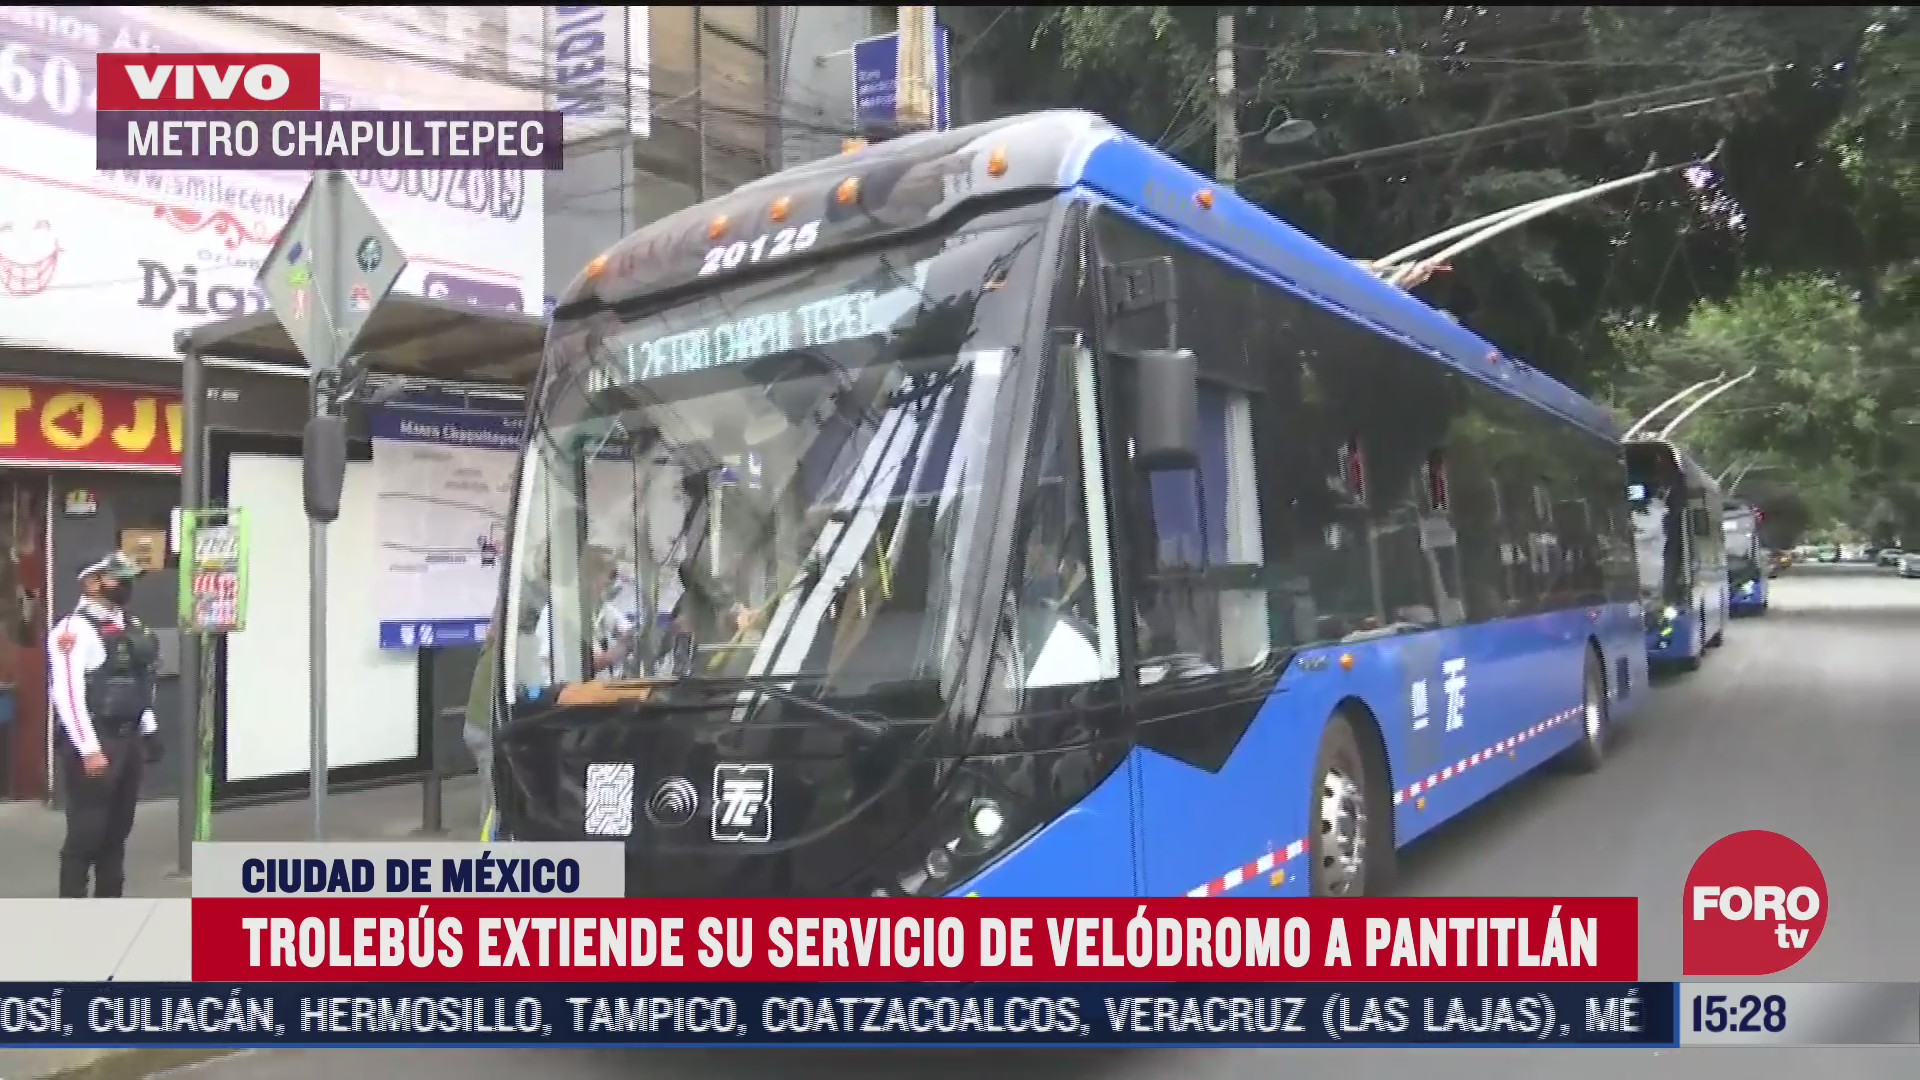 trolebus brindara servicio de metro chapultepec a pantitlan tras incendio en instalaciones del metro